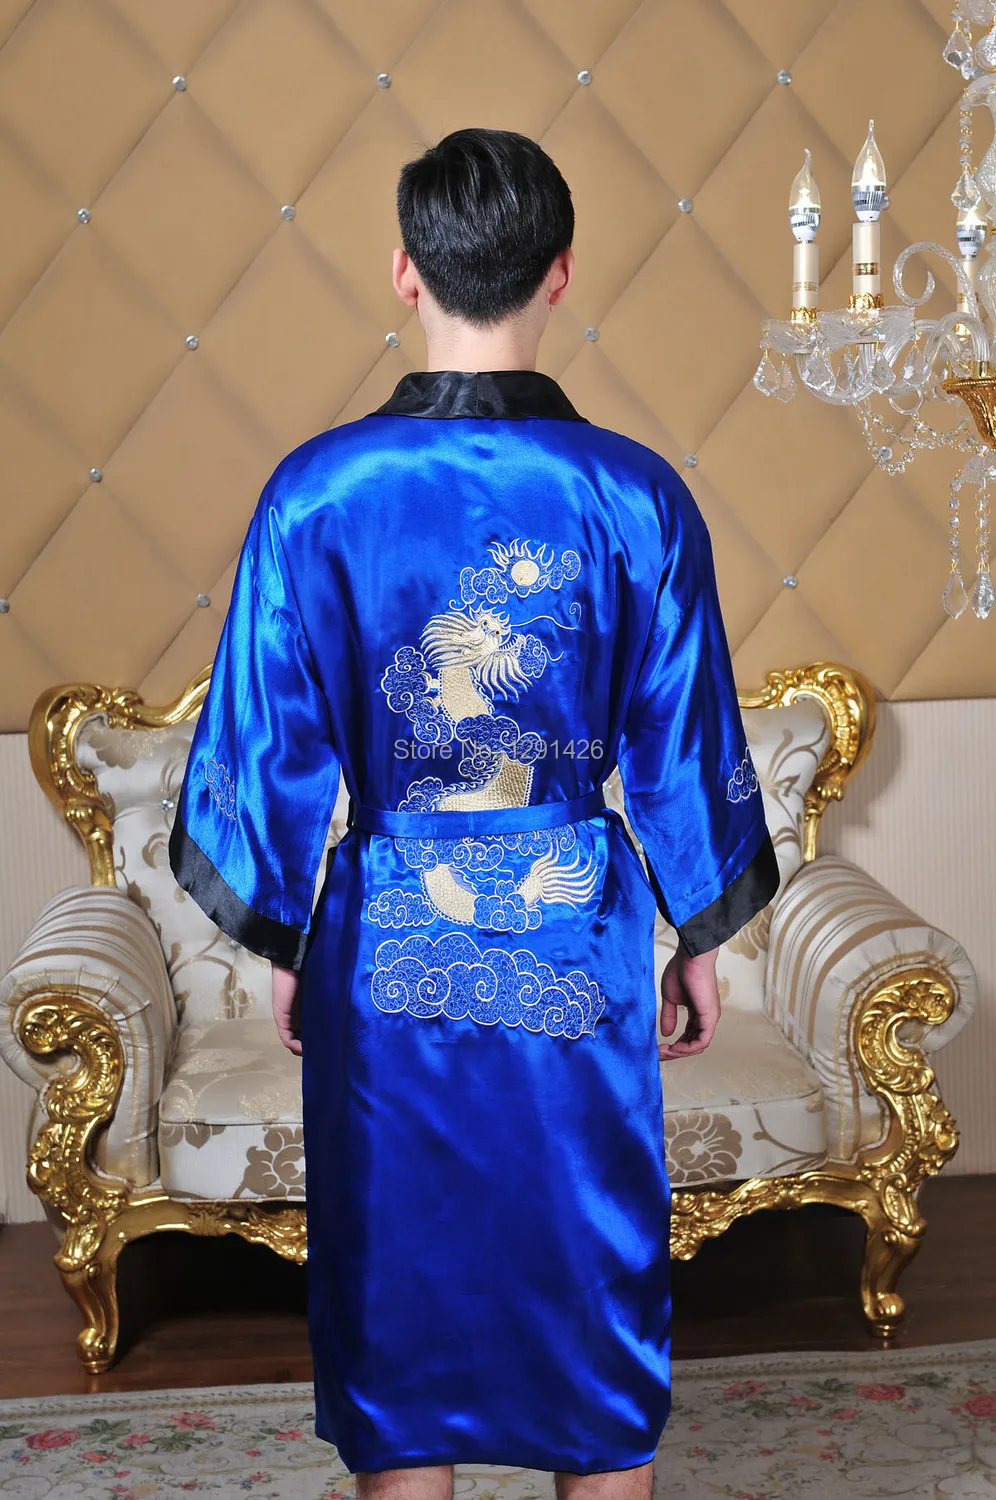 Бесплатная доставка! реверсивный дважды лицо китайский Для мужчин Silk вышивает дракон халат платье с поясом M, L, XL, XXL, XXXL MR004